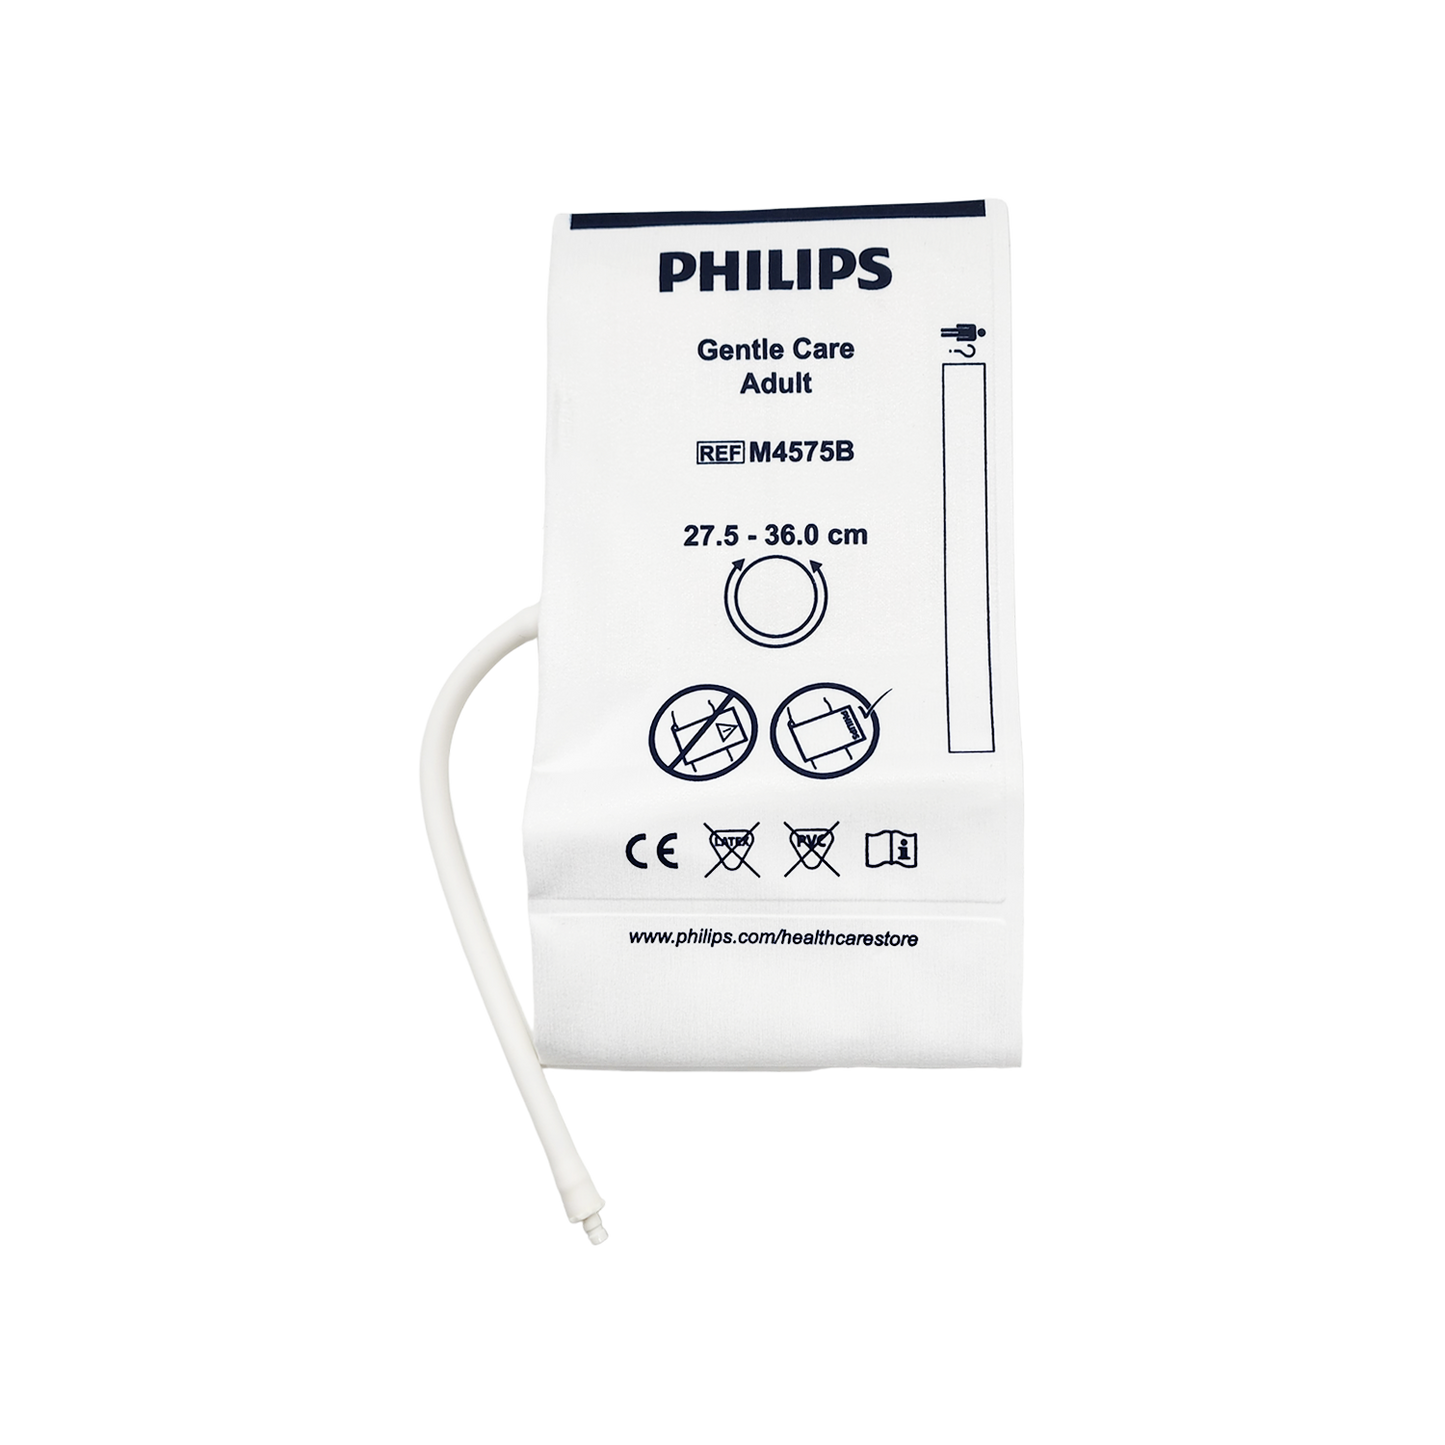 Philips NiBP Cuff Single Tube Non-Woven Fiber Adult (26.5-36.0cm) - M4575B / 989803148031